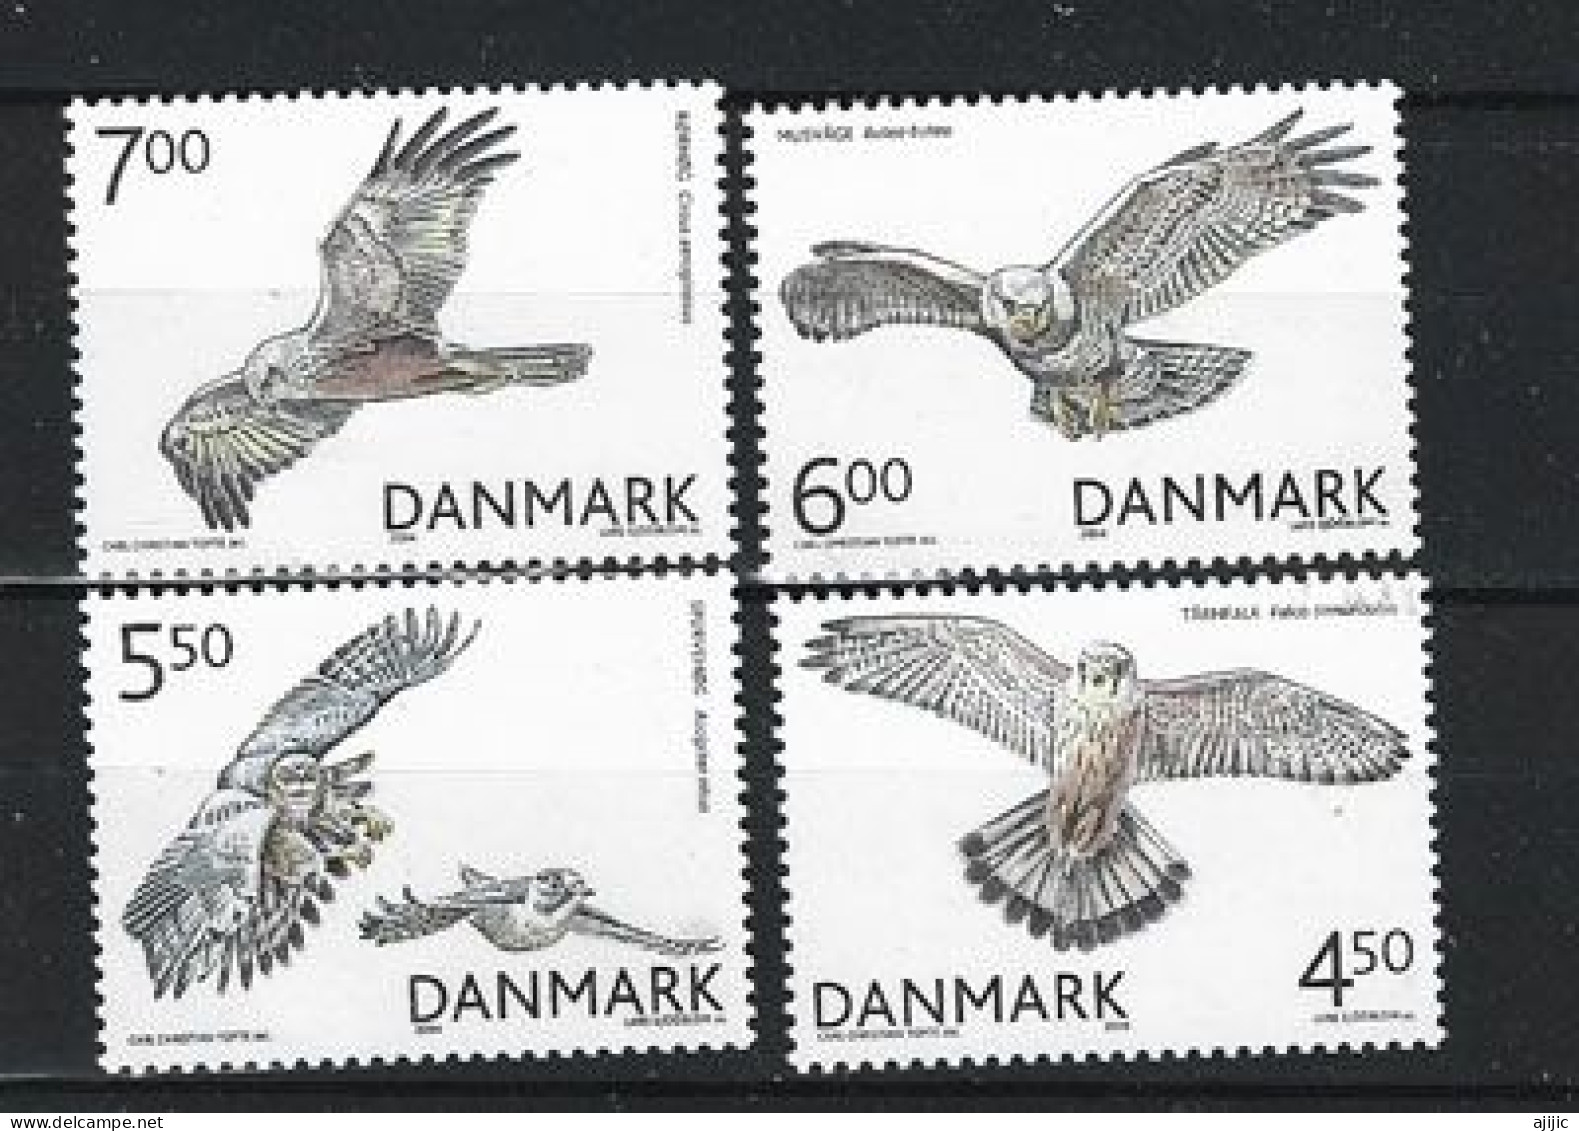 DANEMARK. Oiseaux De Proie / Rapaces Du Danemark. Série Complète 4 Timbres Neufs **  Année 2004 - Unused Stamps